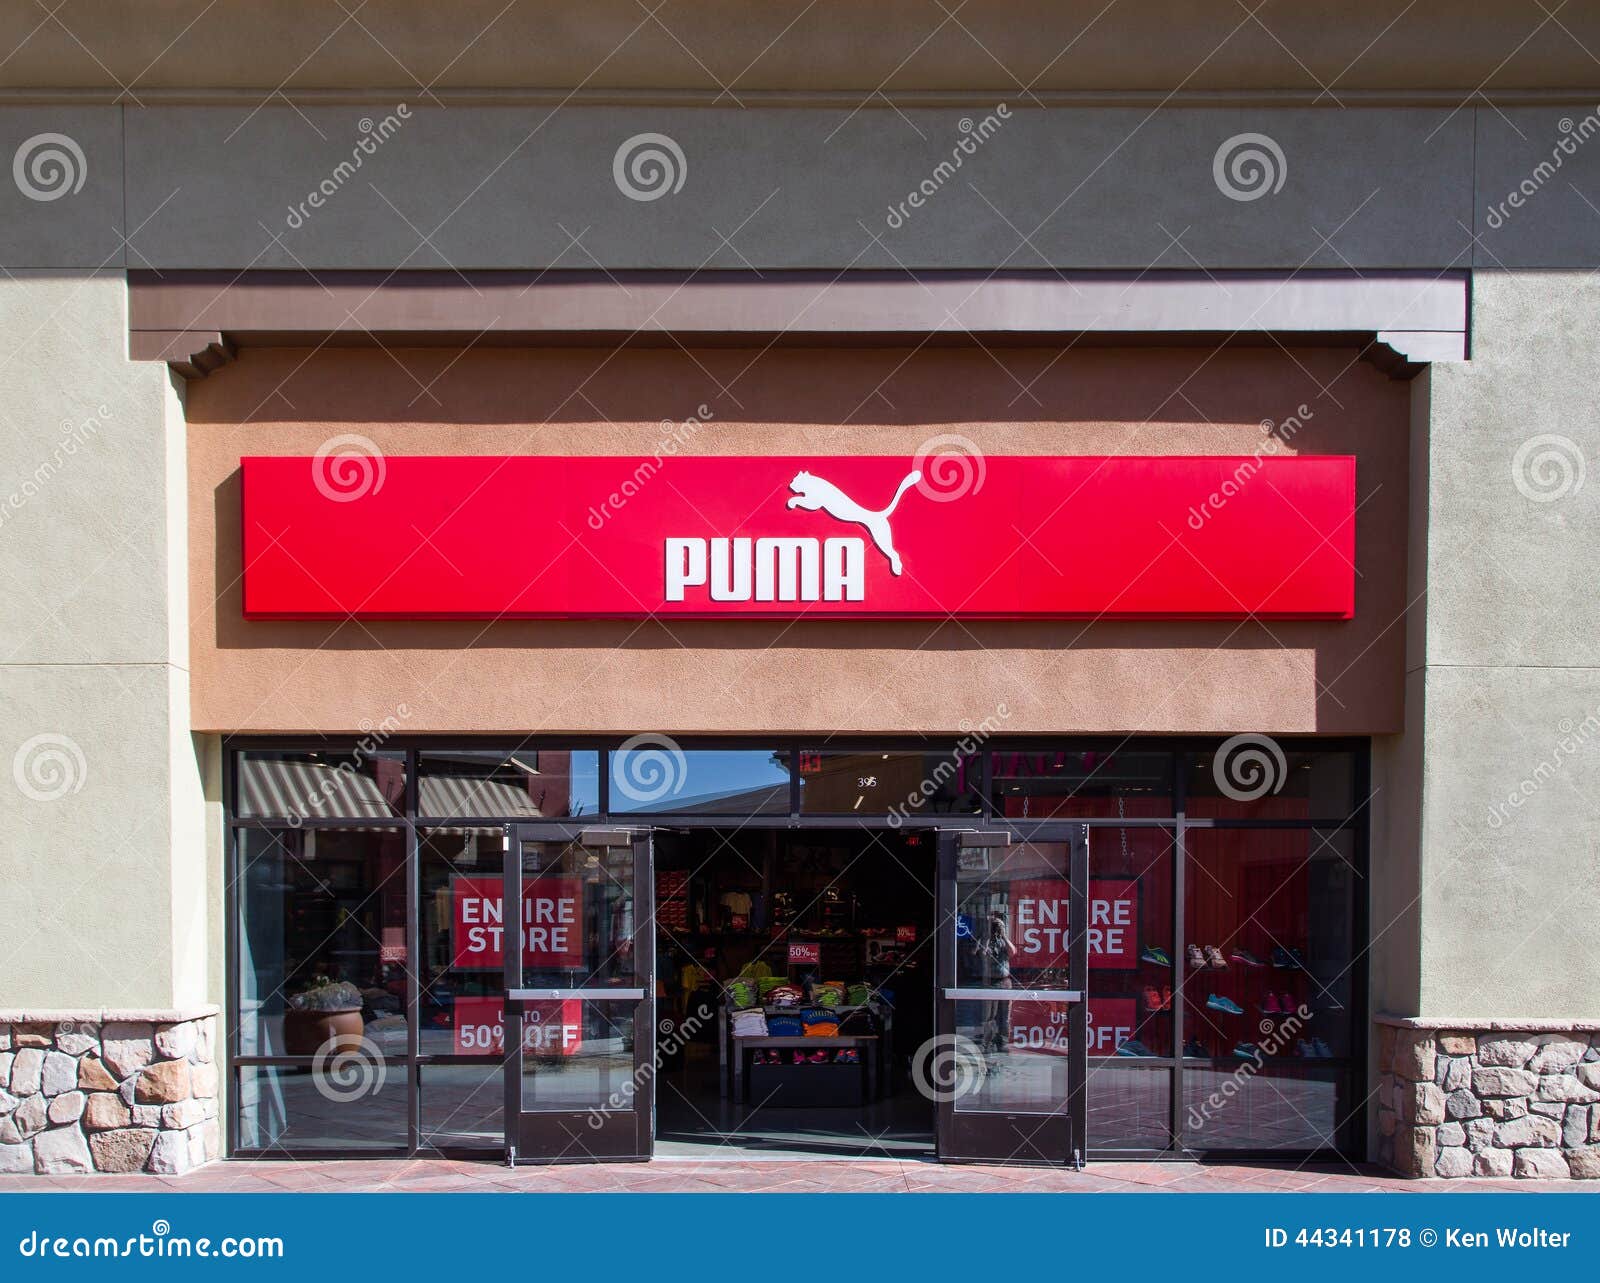 pumas store usa - 58% OFF 